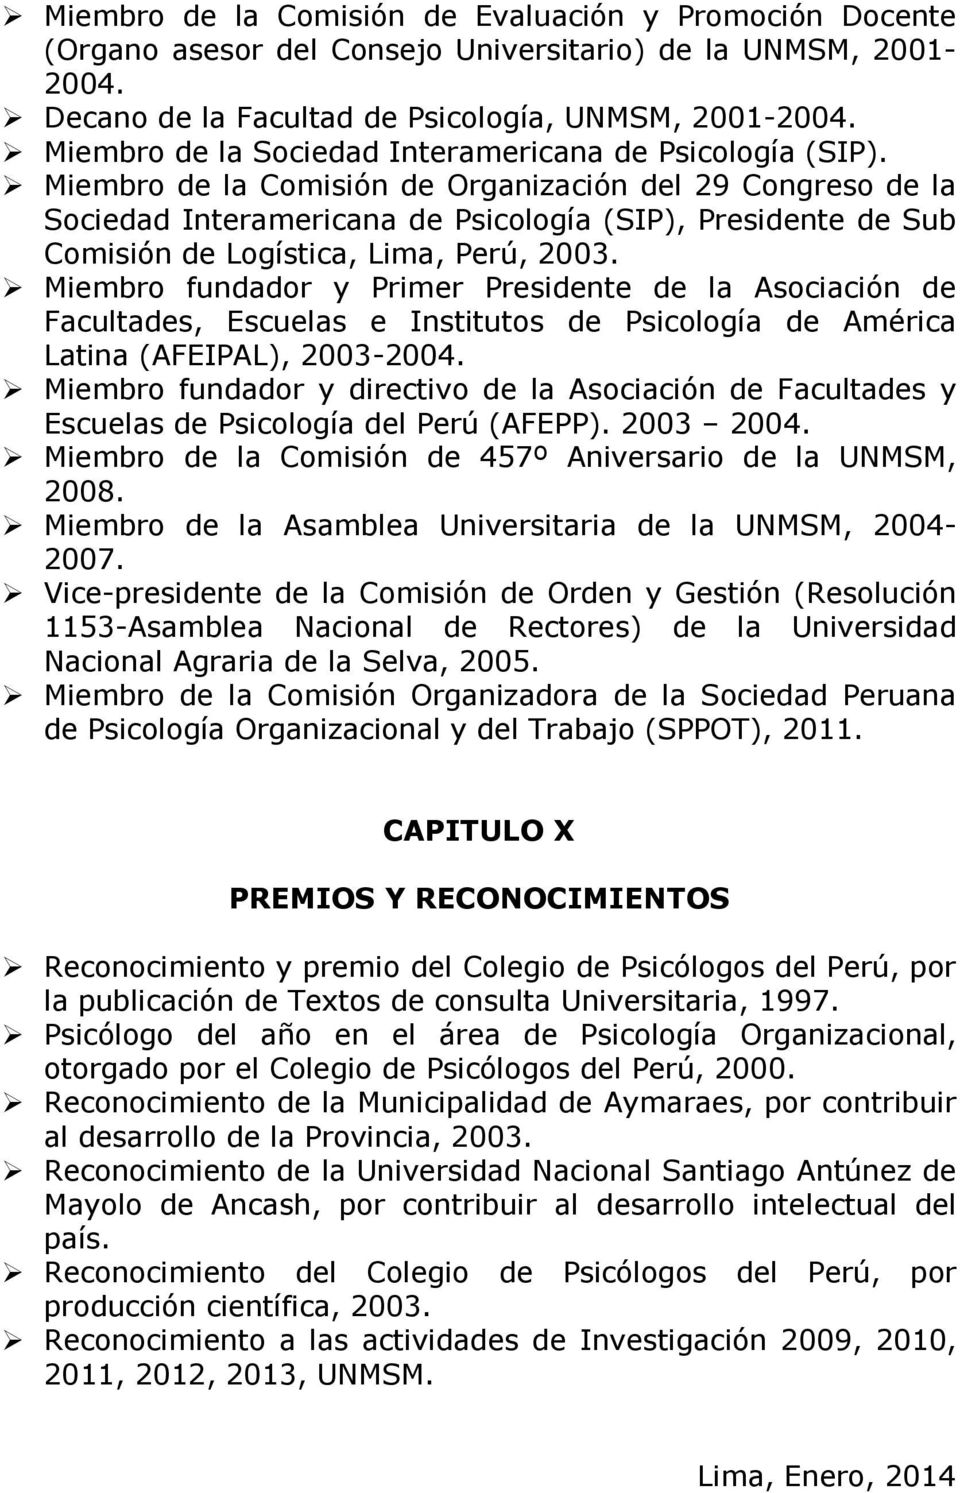 Miembro de la Comisión de Organización del 29 Congreso de la Sociedad Interamericana de Psicología (SIP), Presidente de Sub Comisión de Logística, Lima, Perú, 2003.